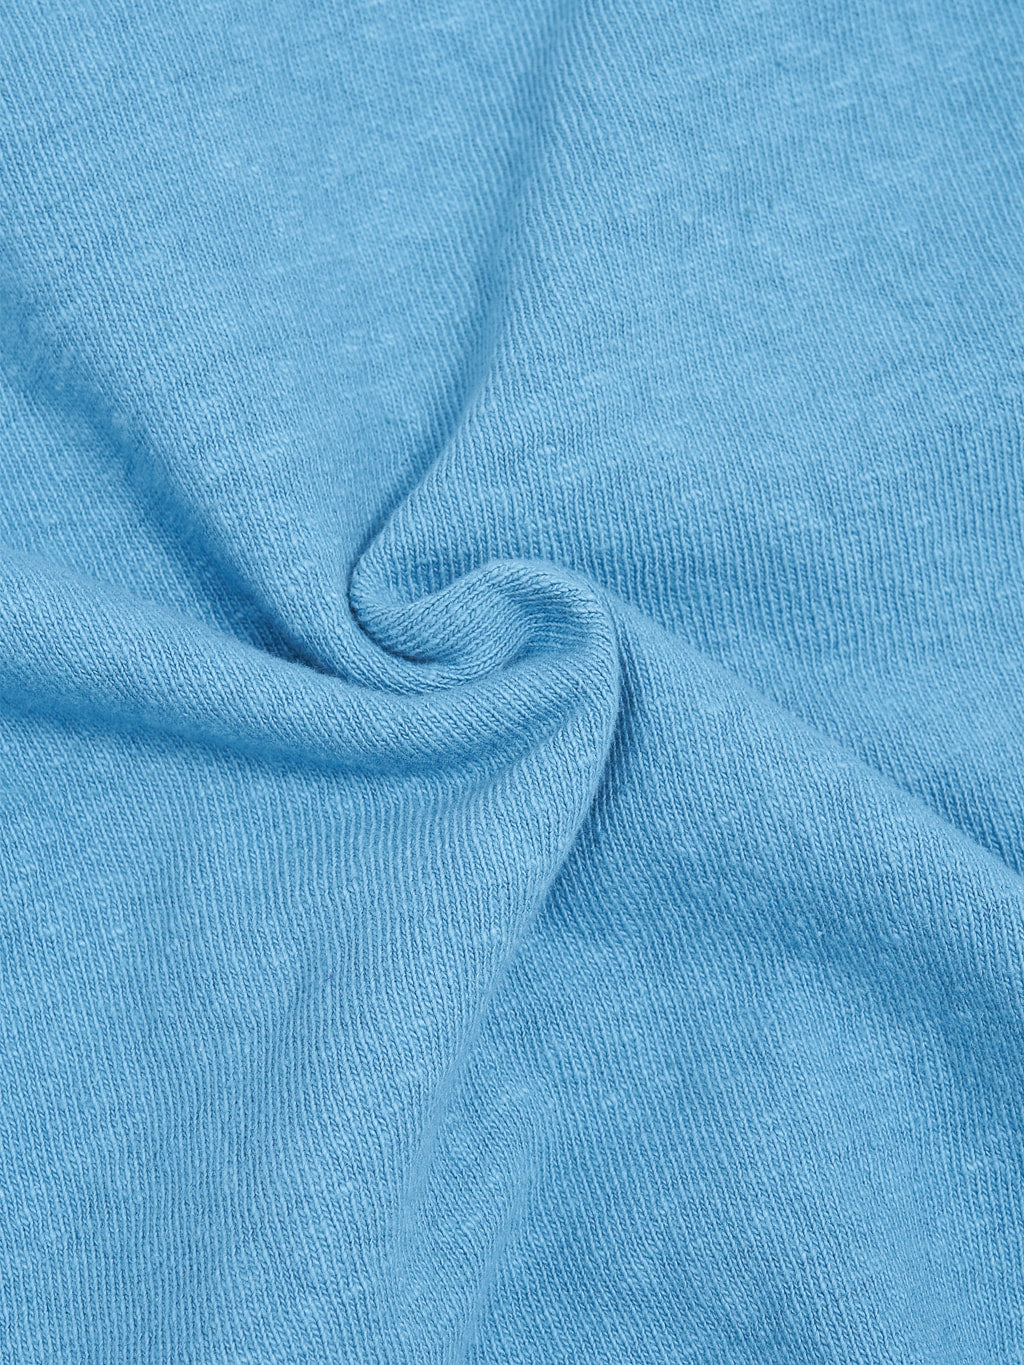 UES N8 Slub Nep Short Sleeve TShirt Blue texture